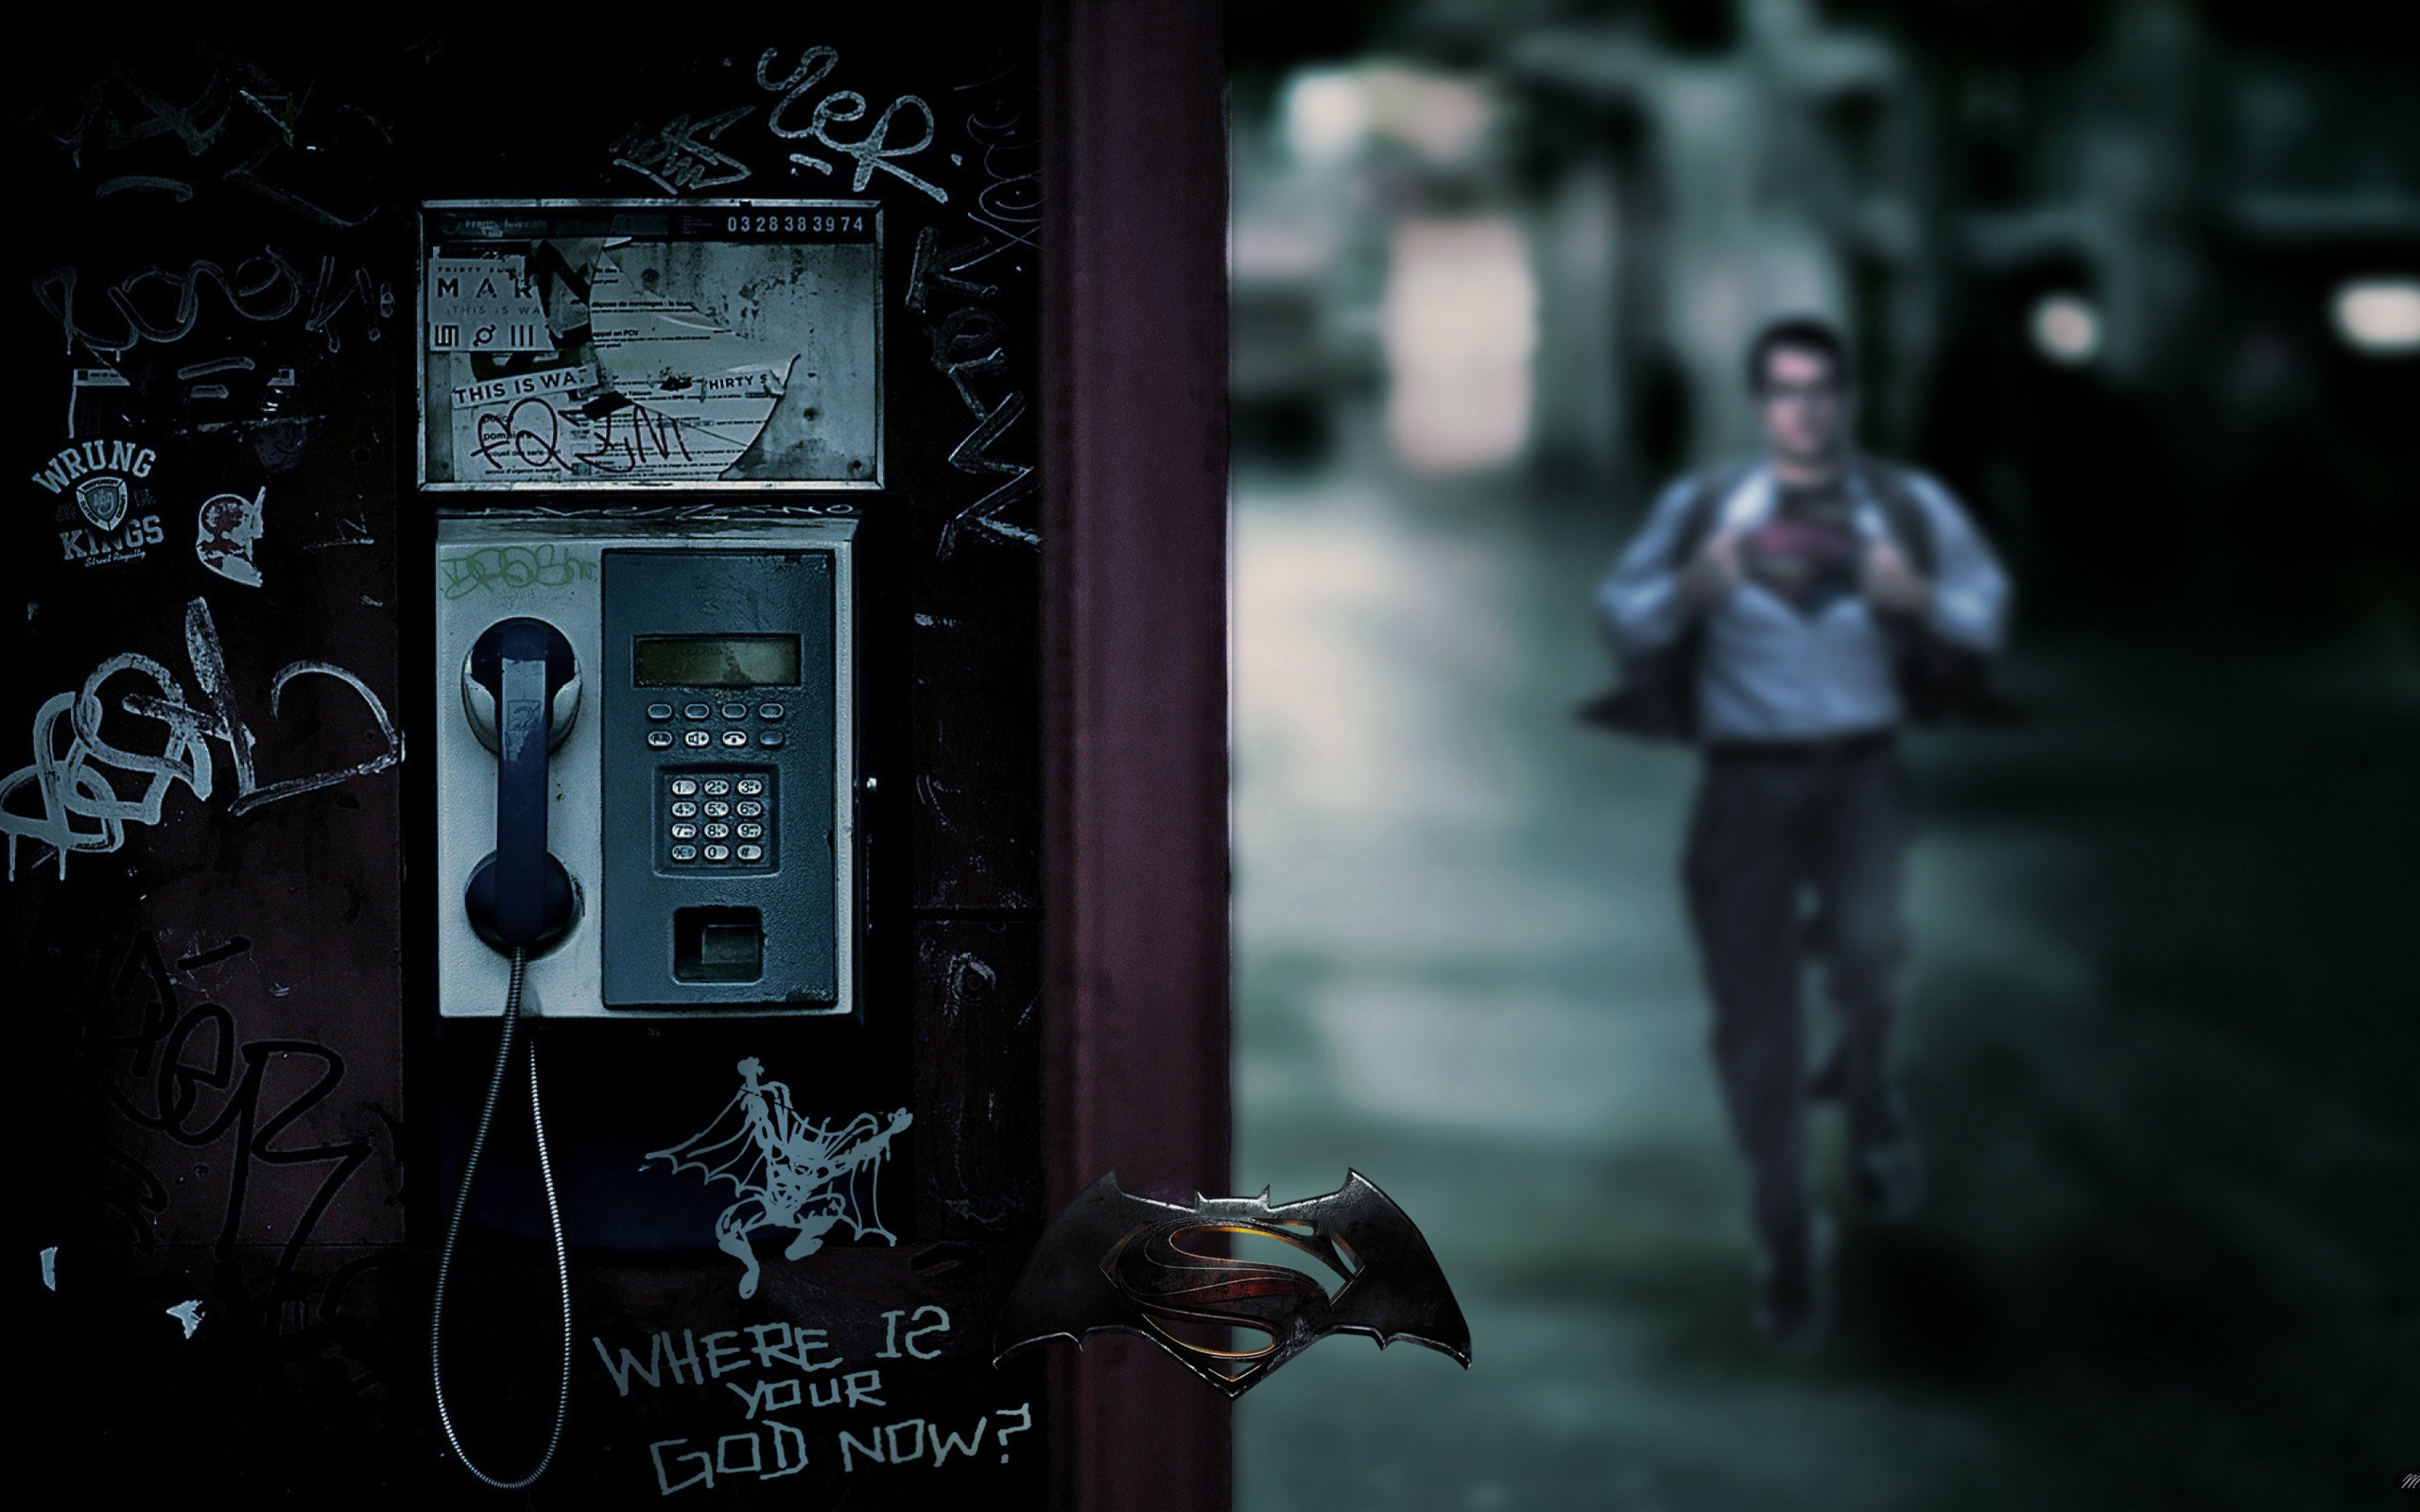 Музыка на улице ночью. Человек в телефонной будке. Мужчина в телефонной будке. Разговор в телефонной будке. Телефонная будка ночью.